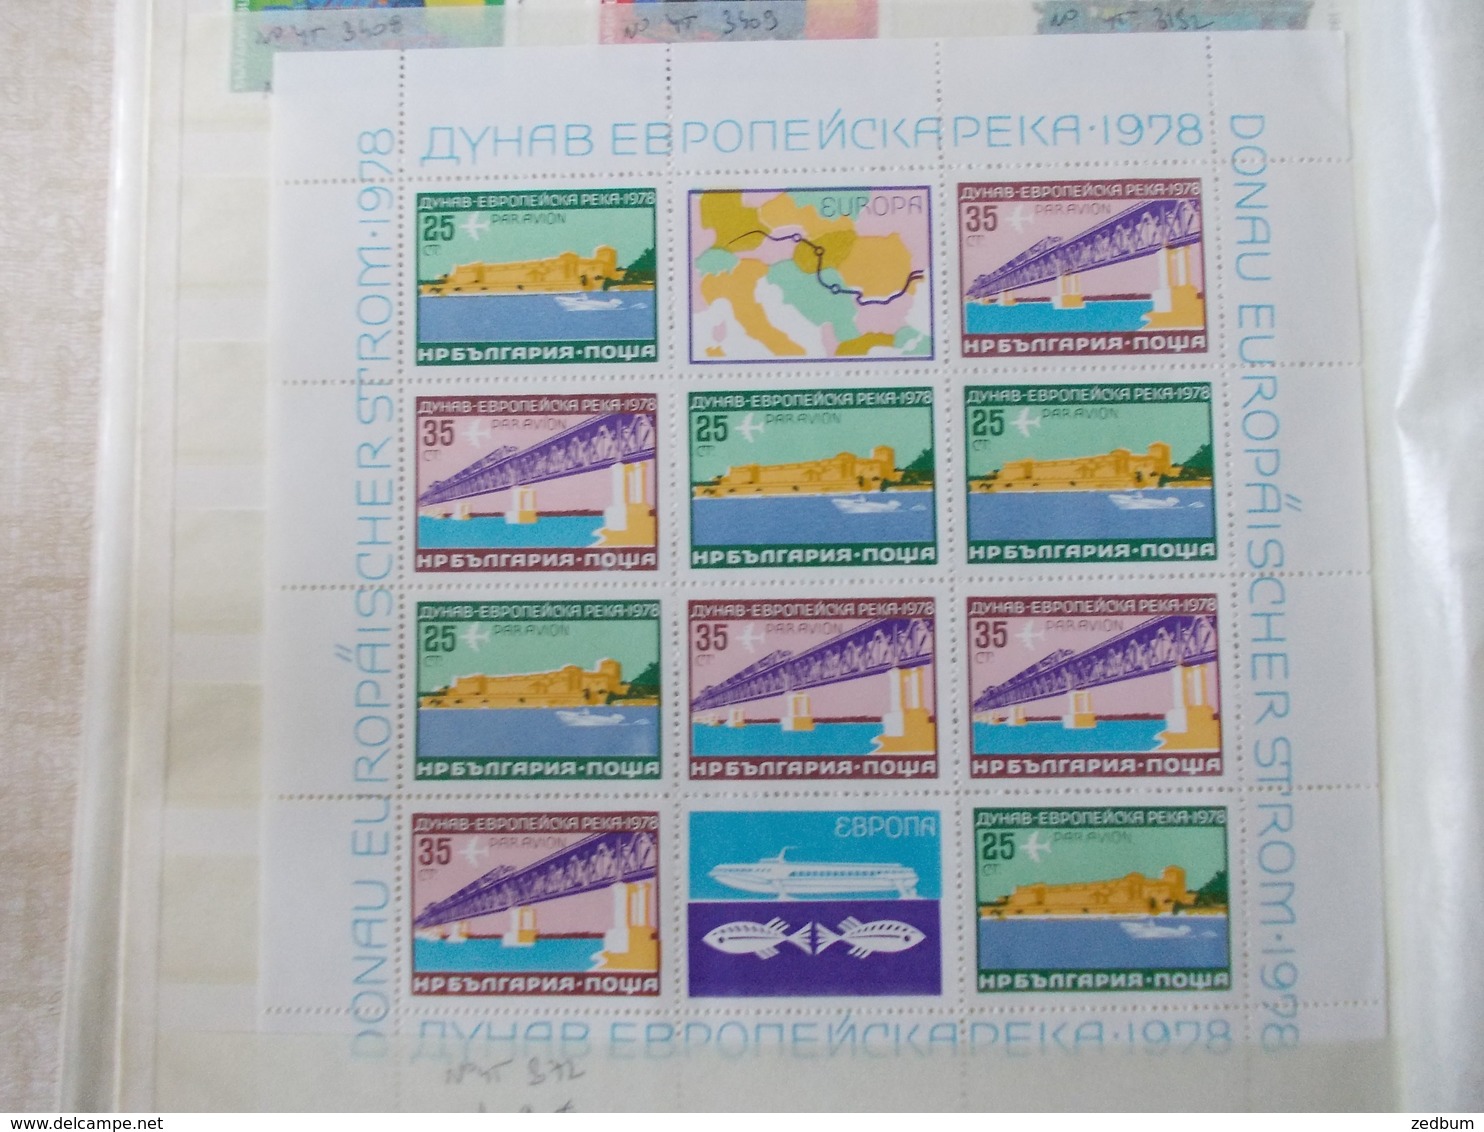 ALBUM 2 collection de timbres avec pour thème le chemin de fer train de tout pays valeur 333.30 &euro;